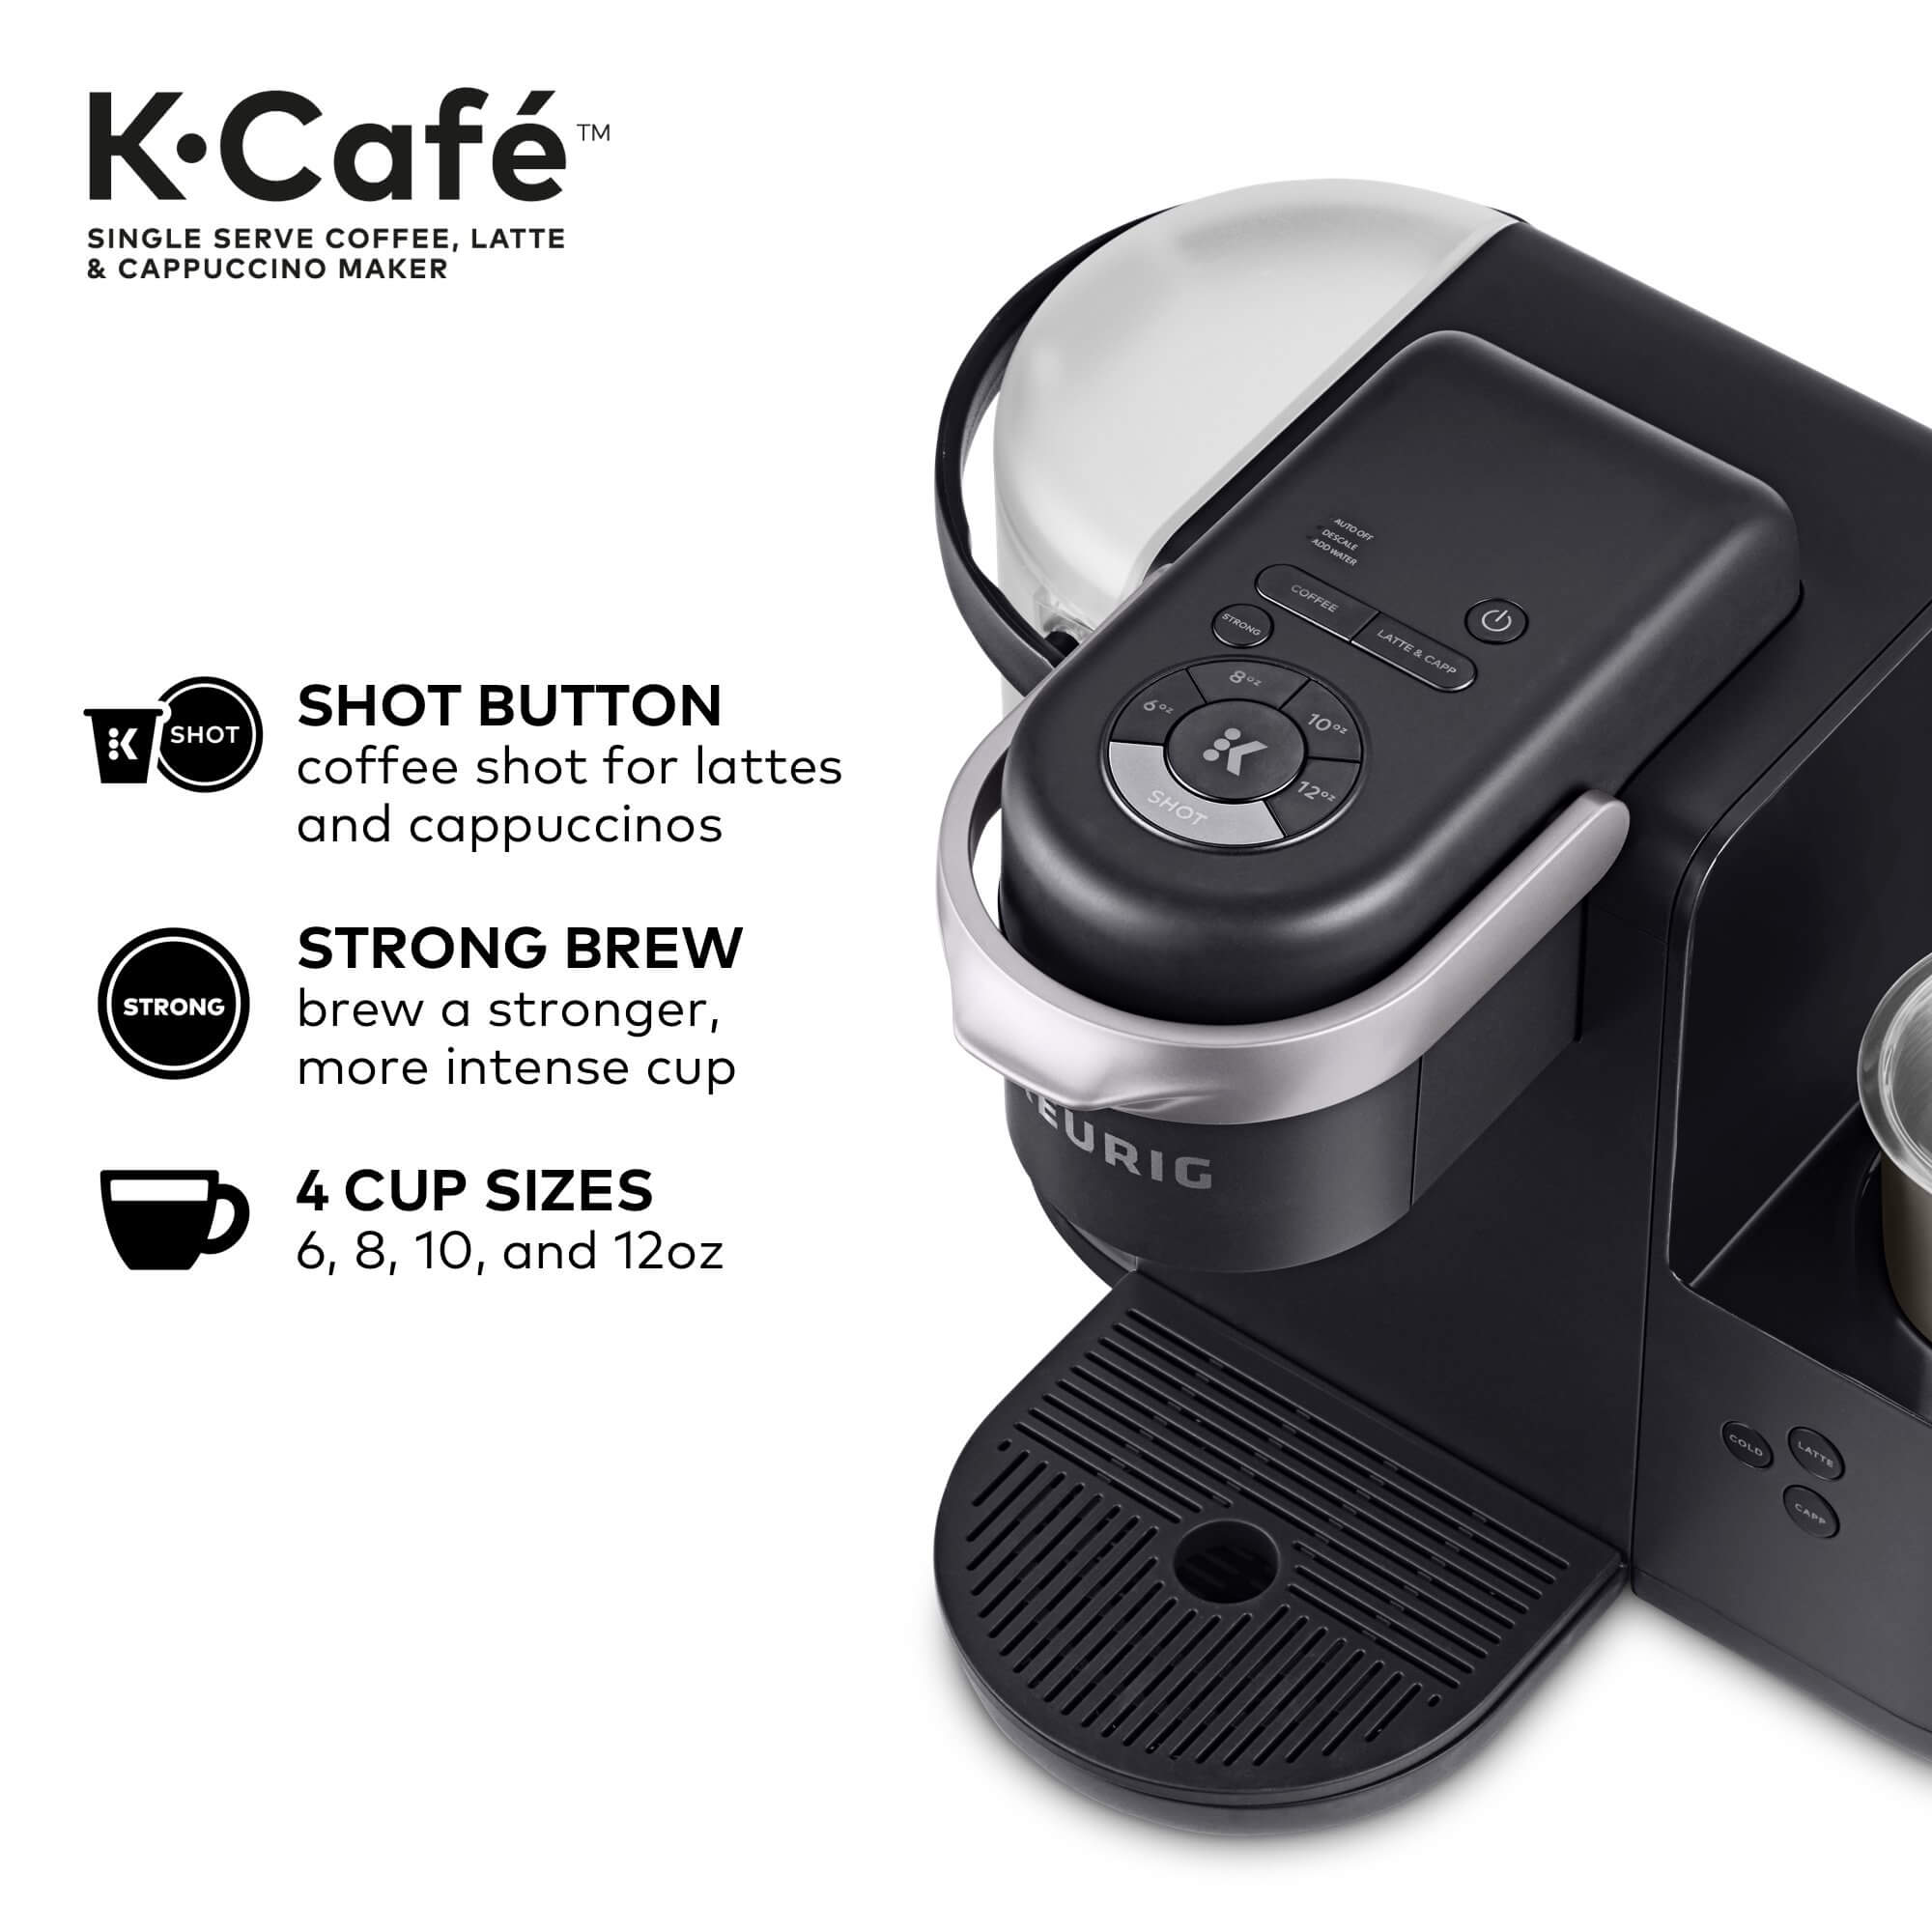 Keurig K-Cafe Coffee Maker, keurig latte maker, keurig espresso machine, keurig frother, best latte k cups, keurig latte maker reviews